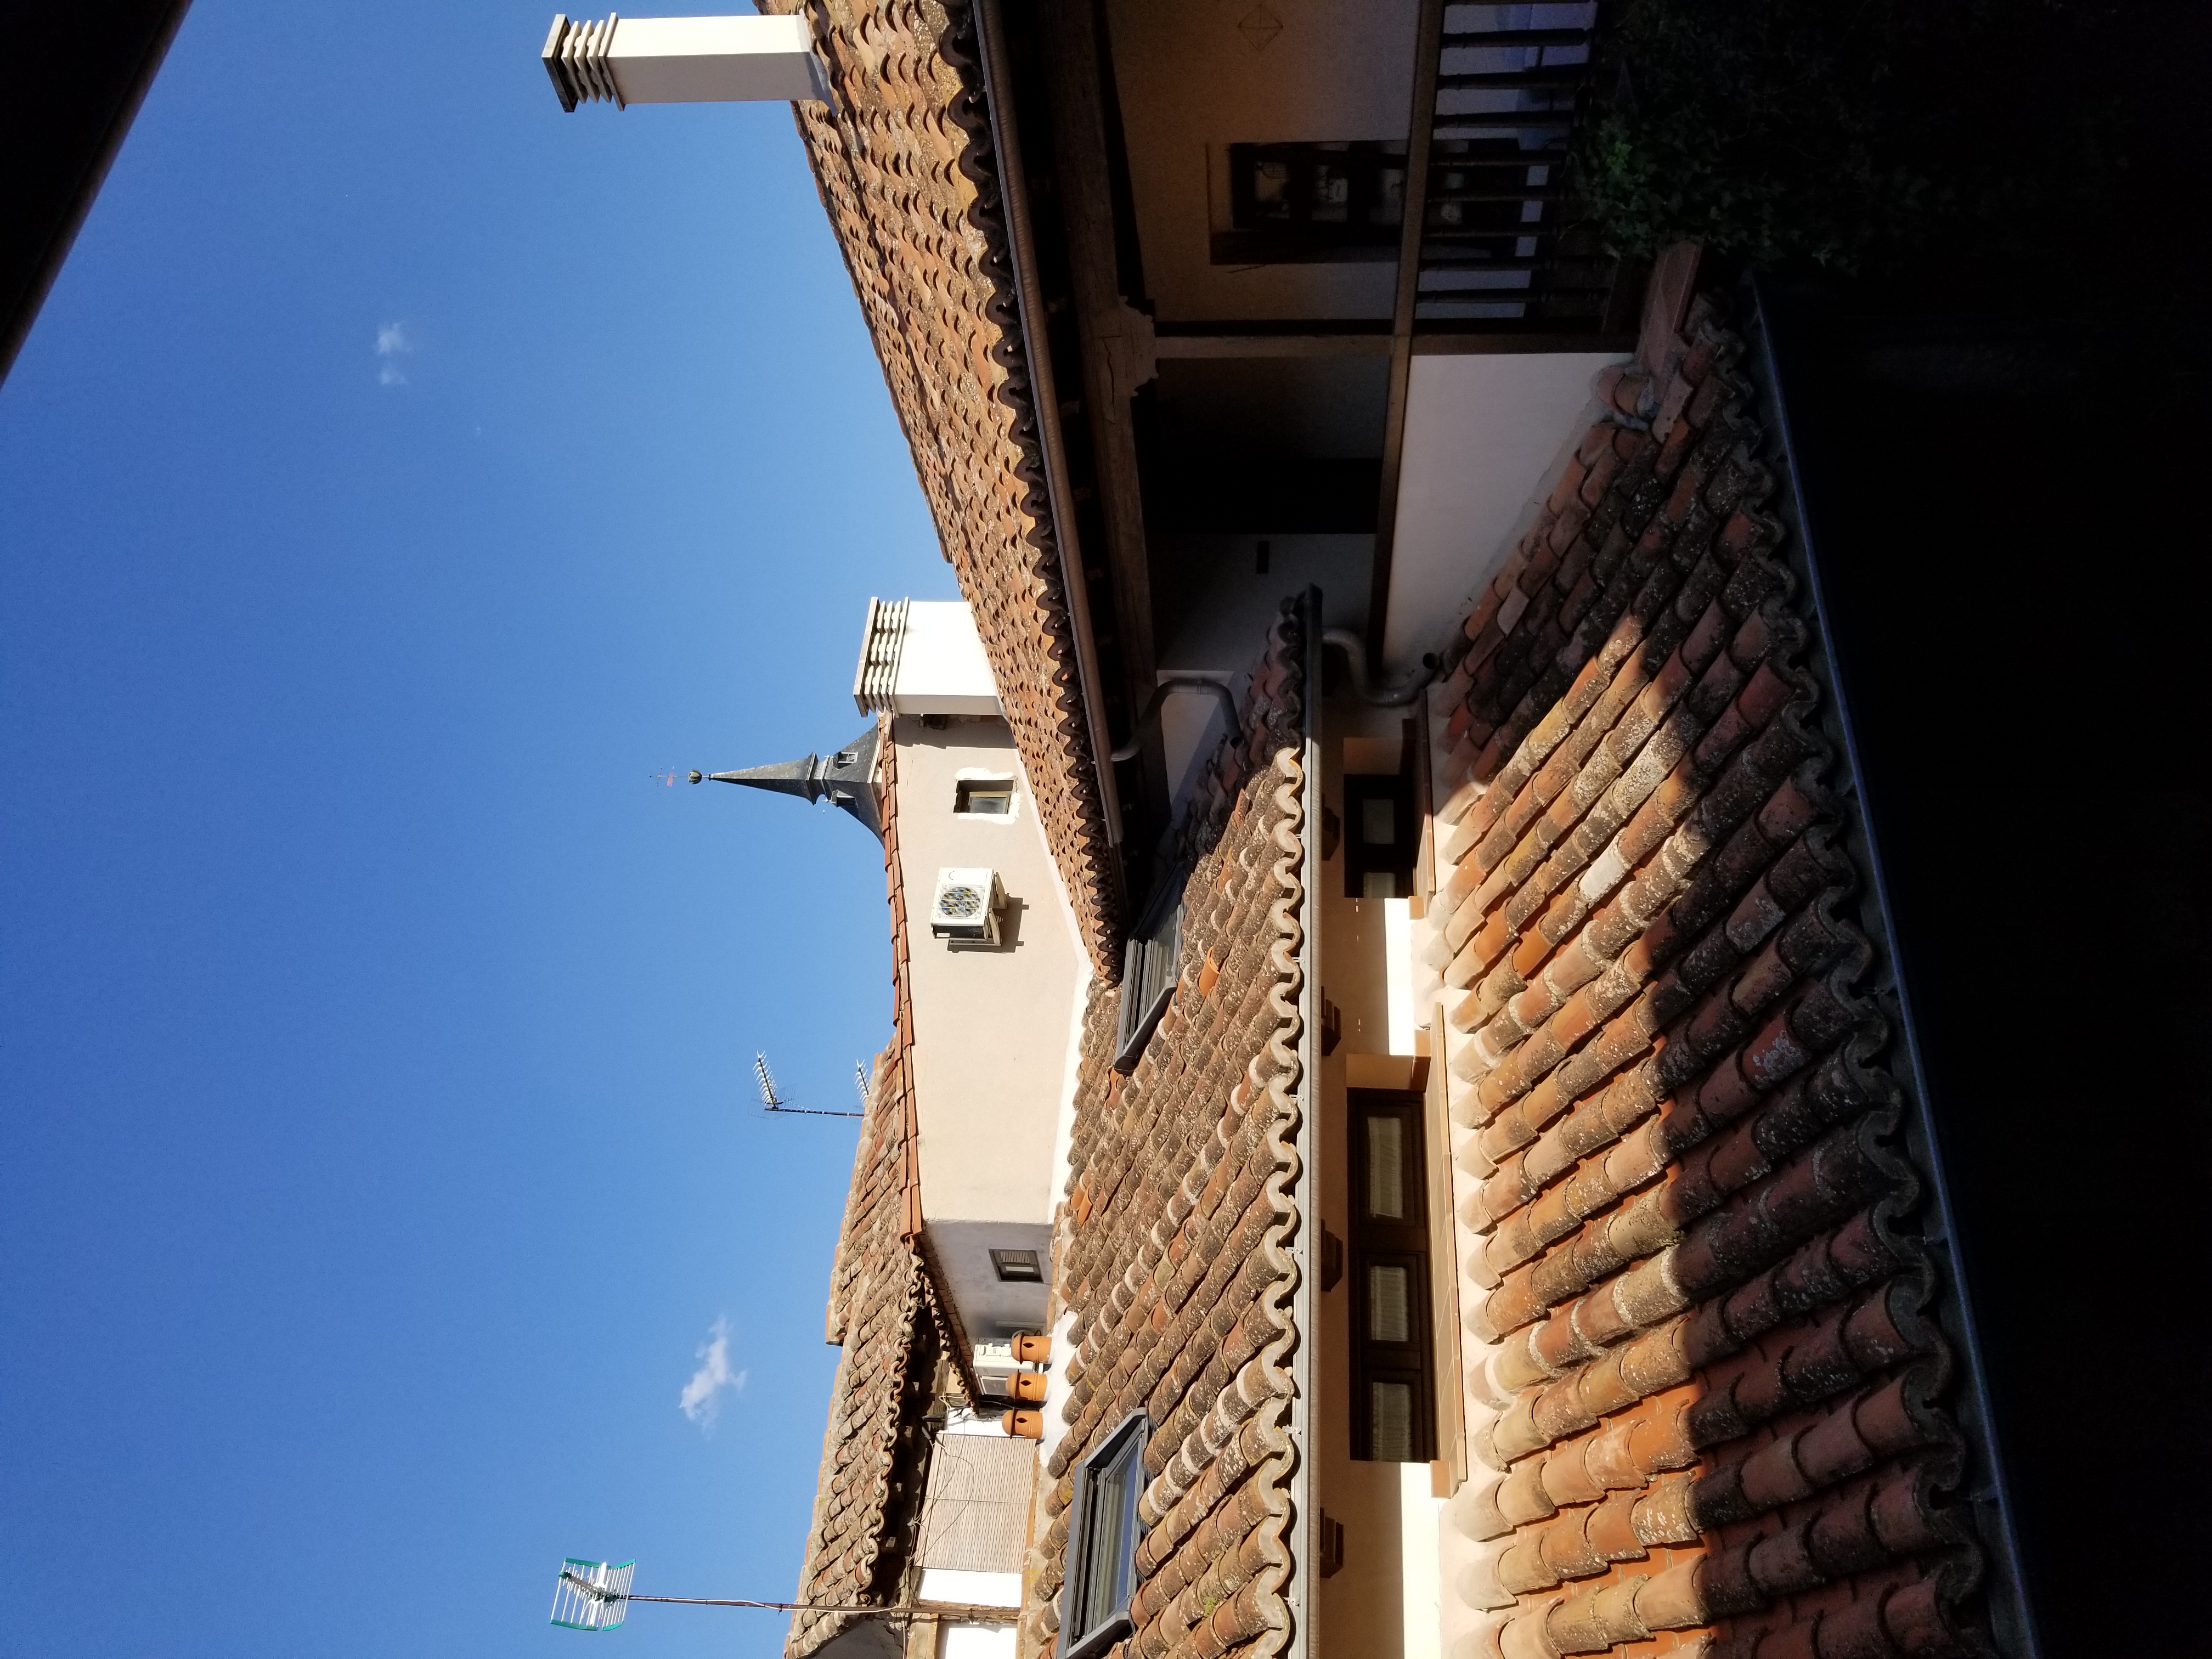 The tiled roof of a spanish inn